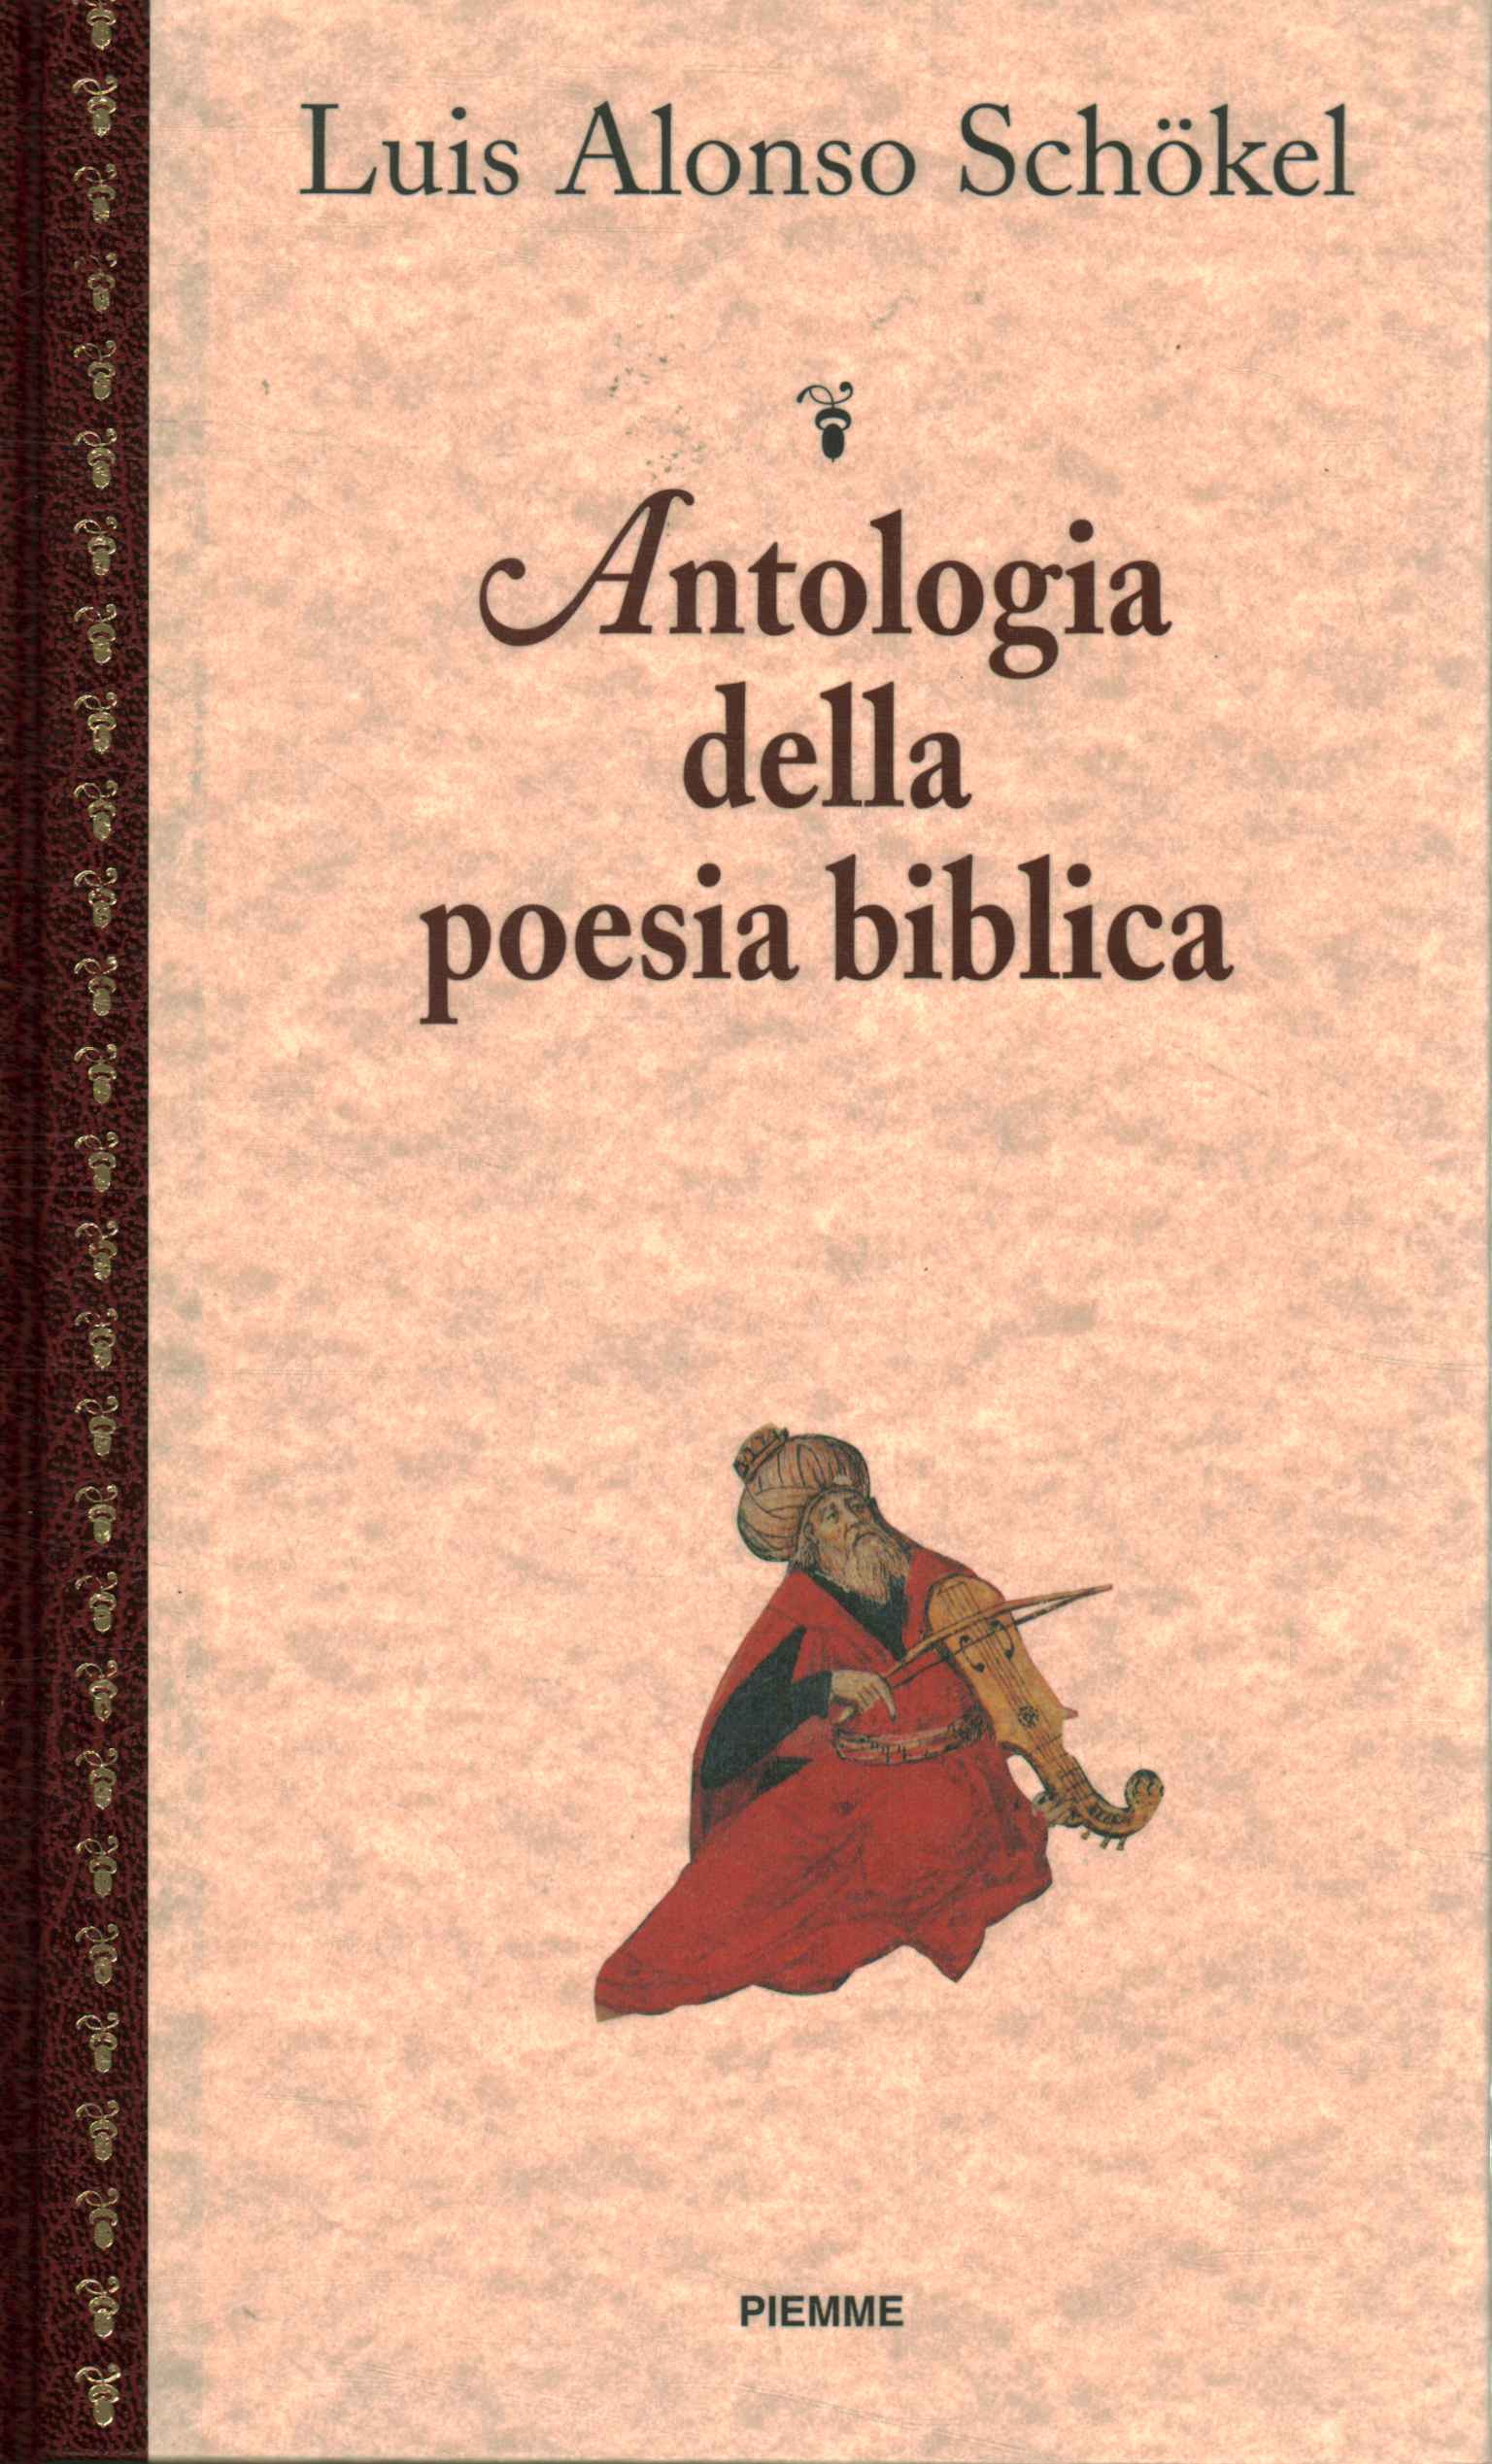 Antología de poesía bíblica.